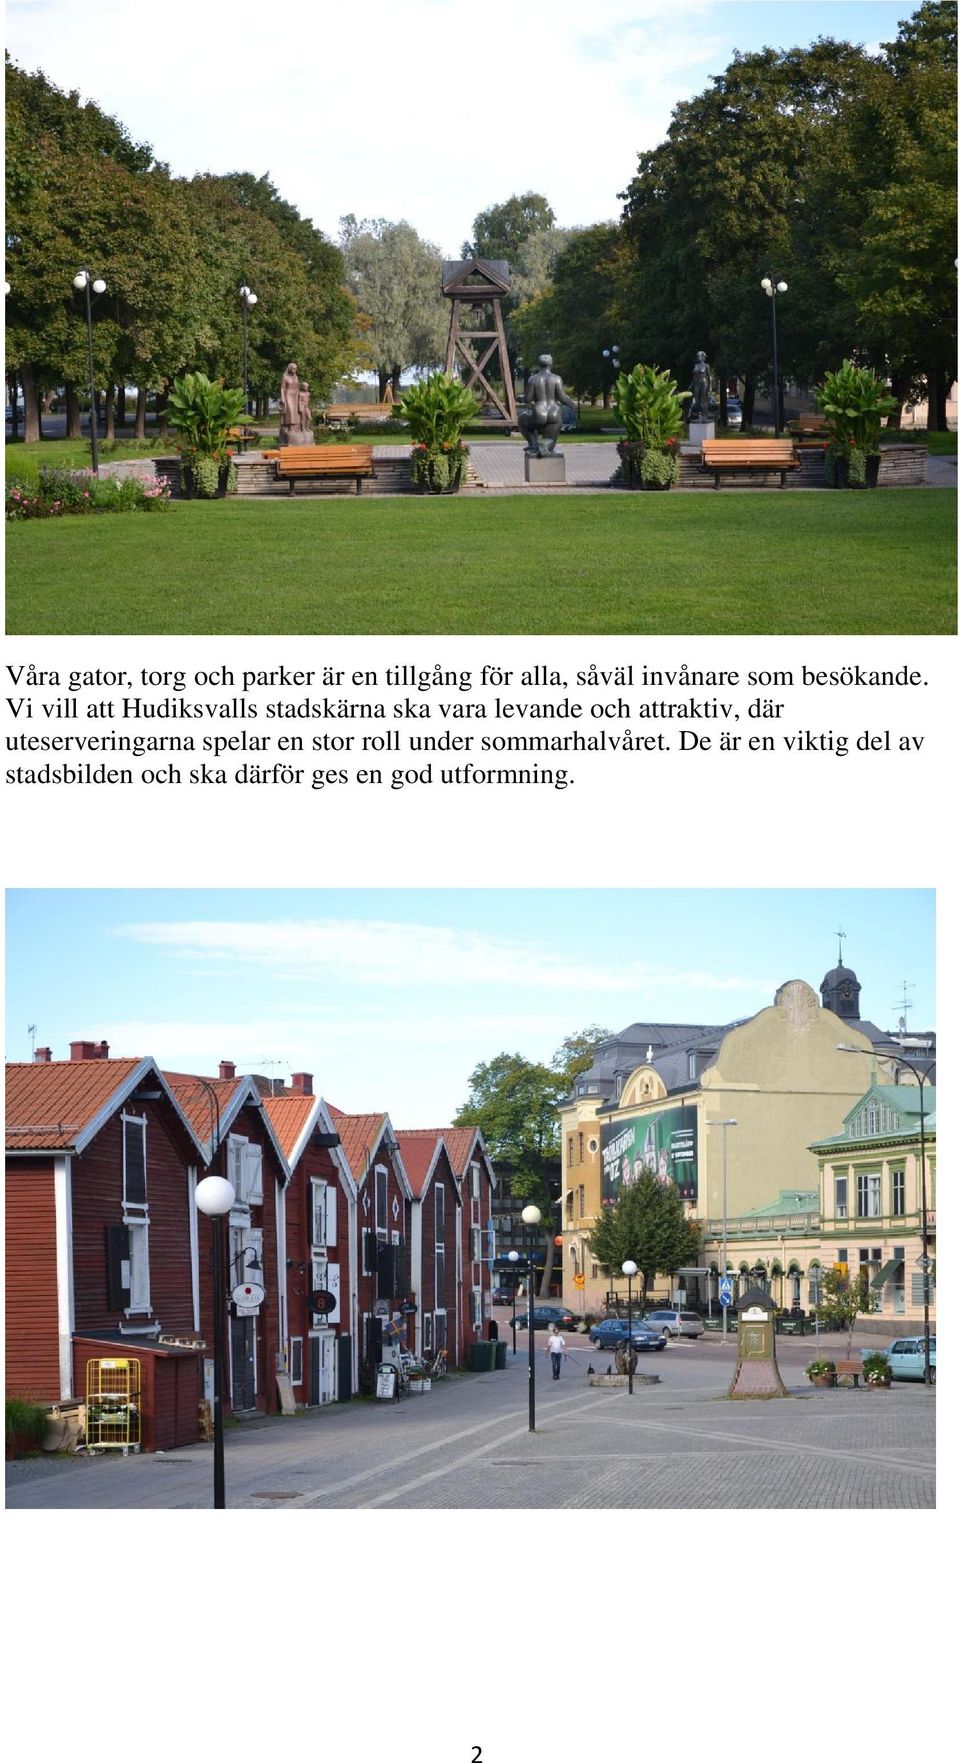 Vi vill att Hudiksvalls stadskärna ska vara levande och attraktiv, där